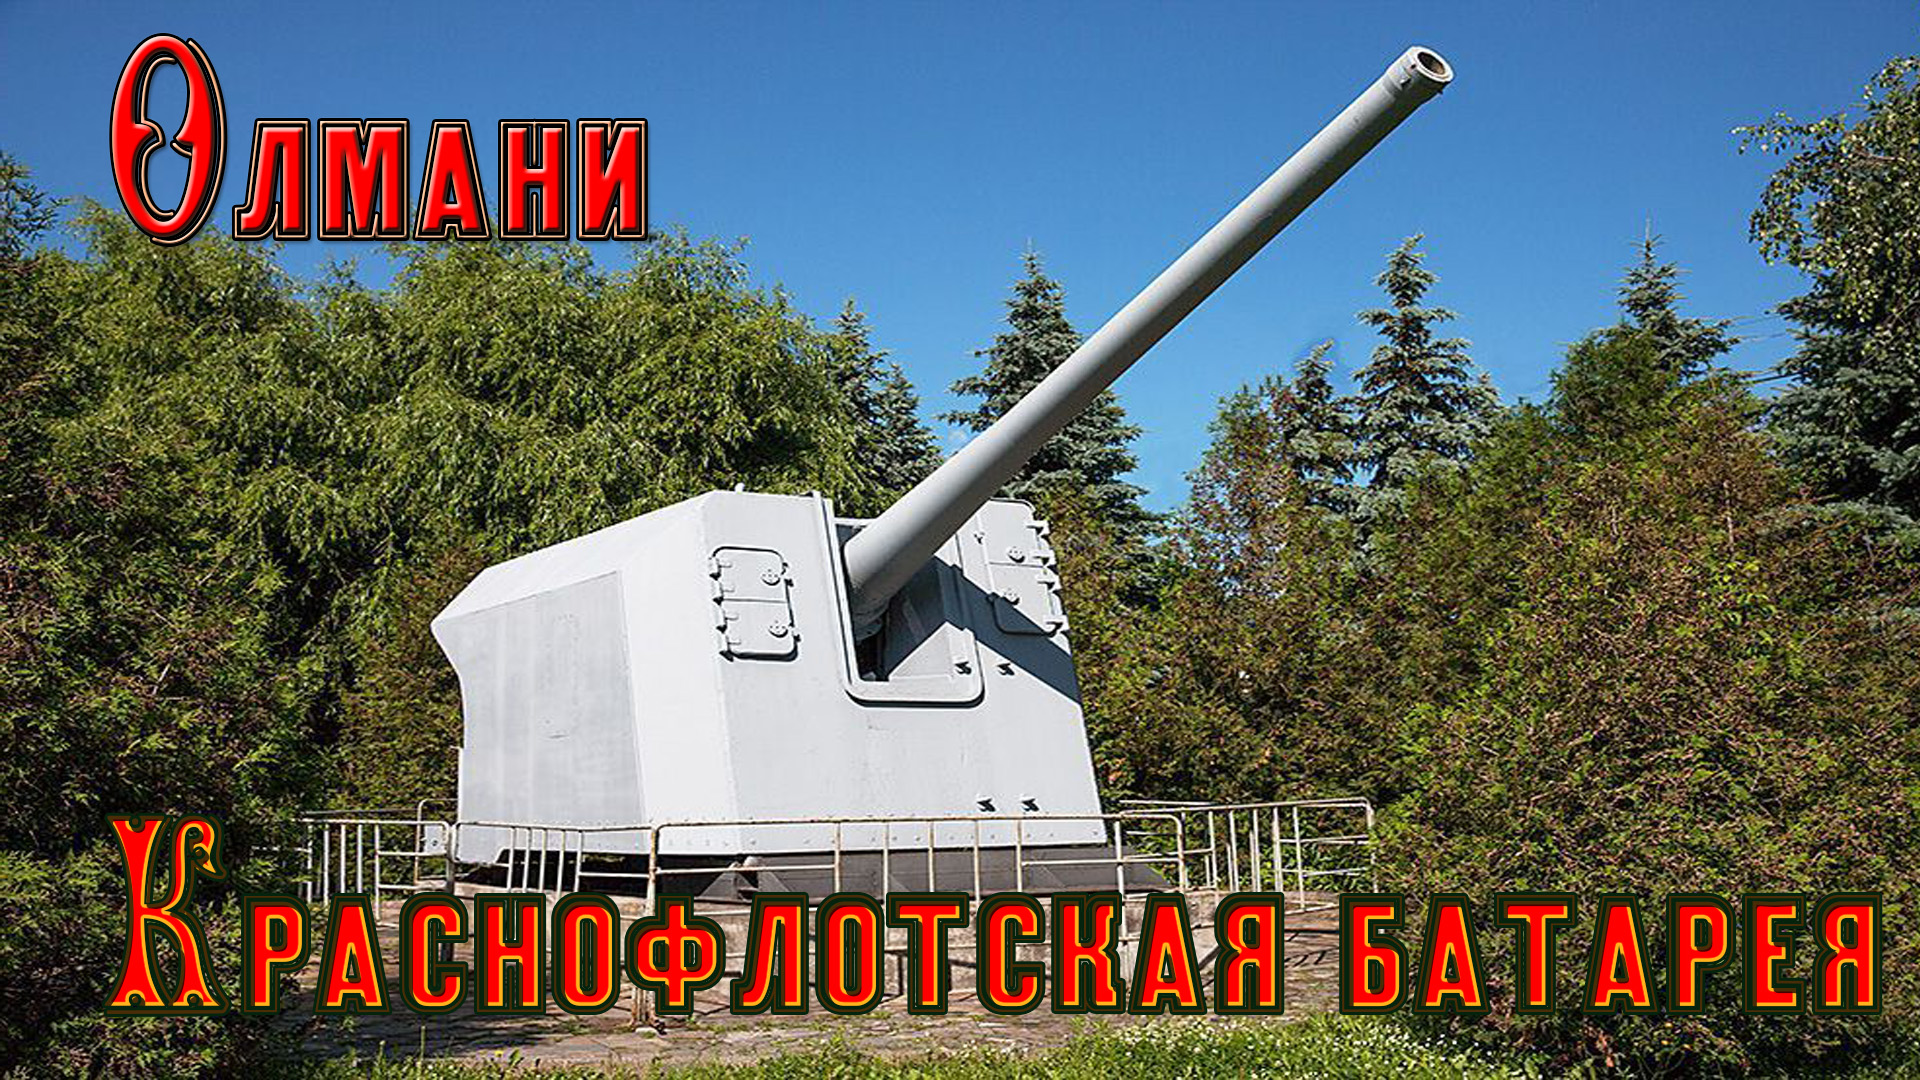 Советская береговая артиллерийская батарея № 456 Олмани (Краснофлотская)